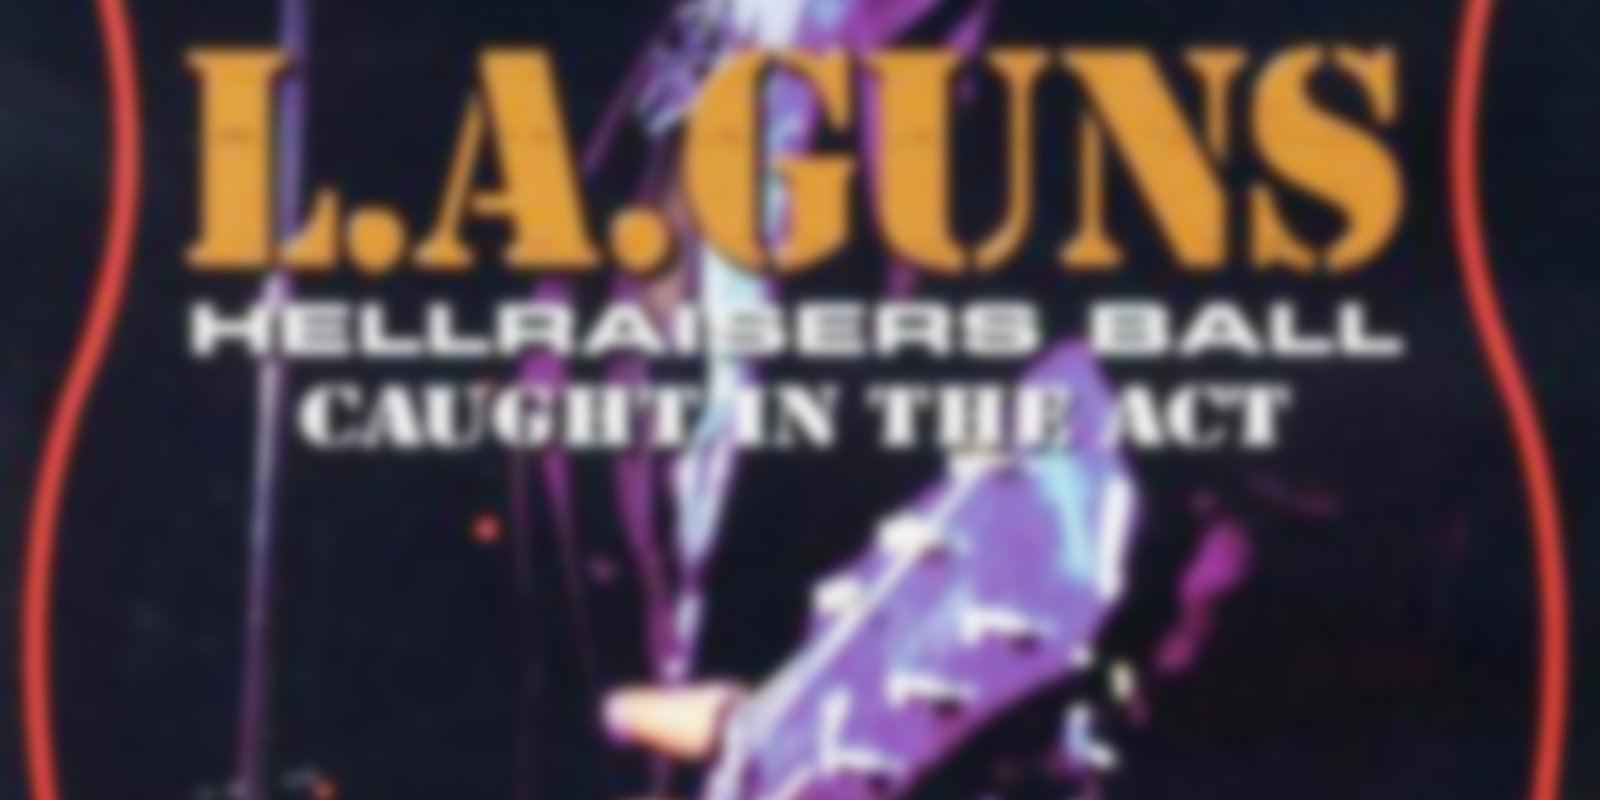 L.A. Guns - Hellraisers Ball